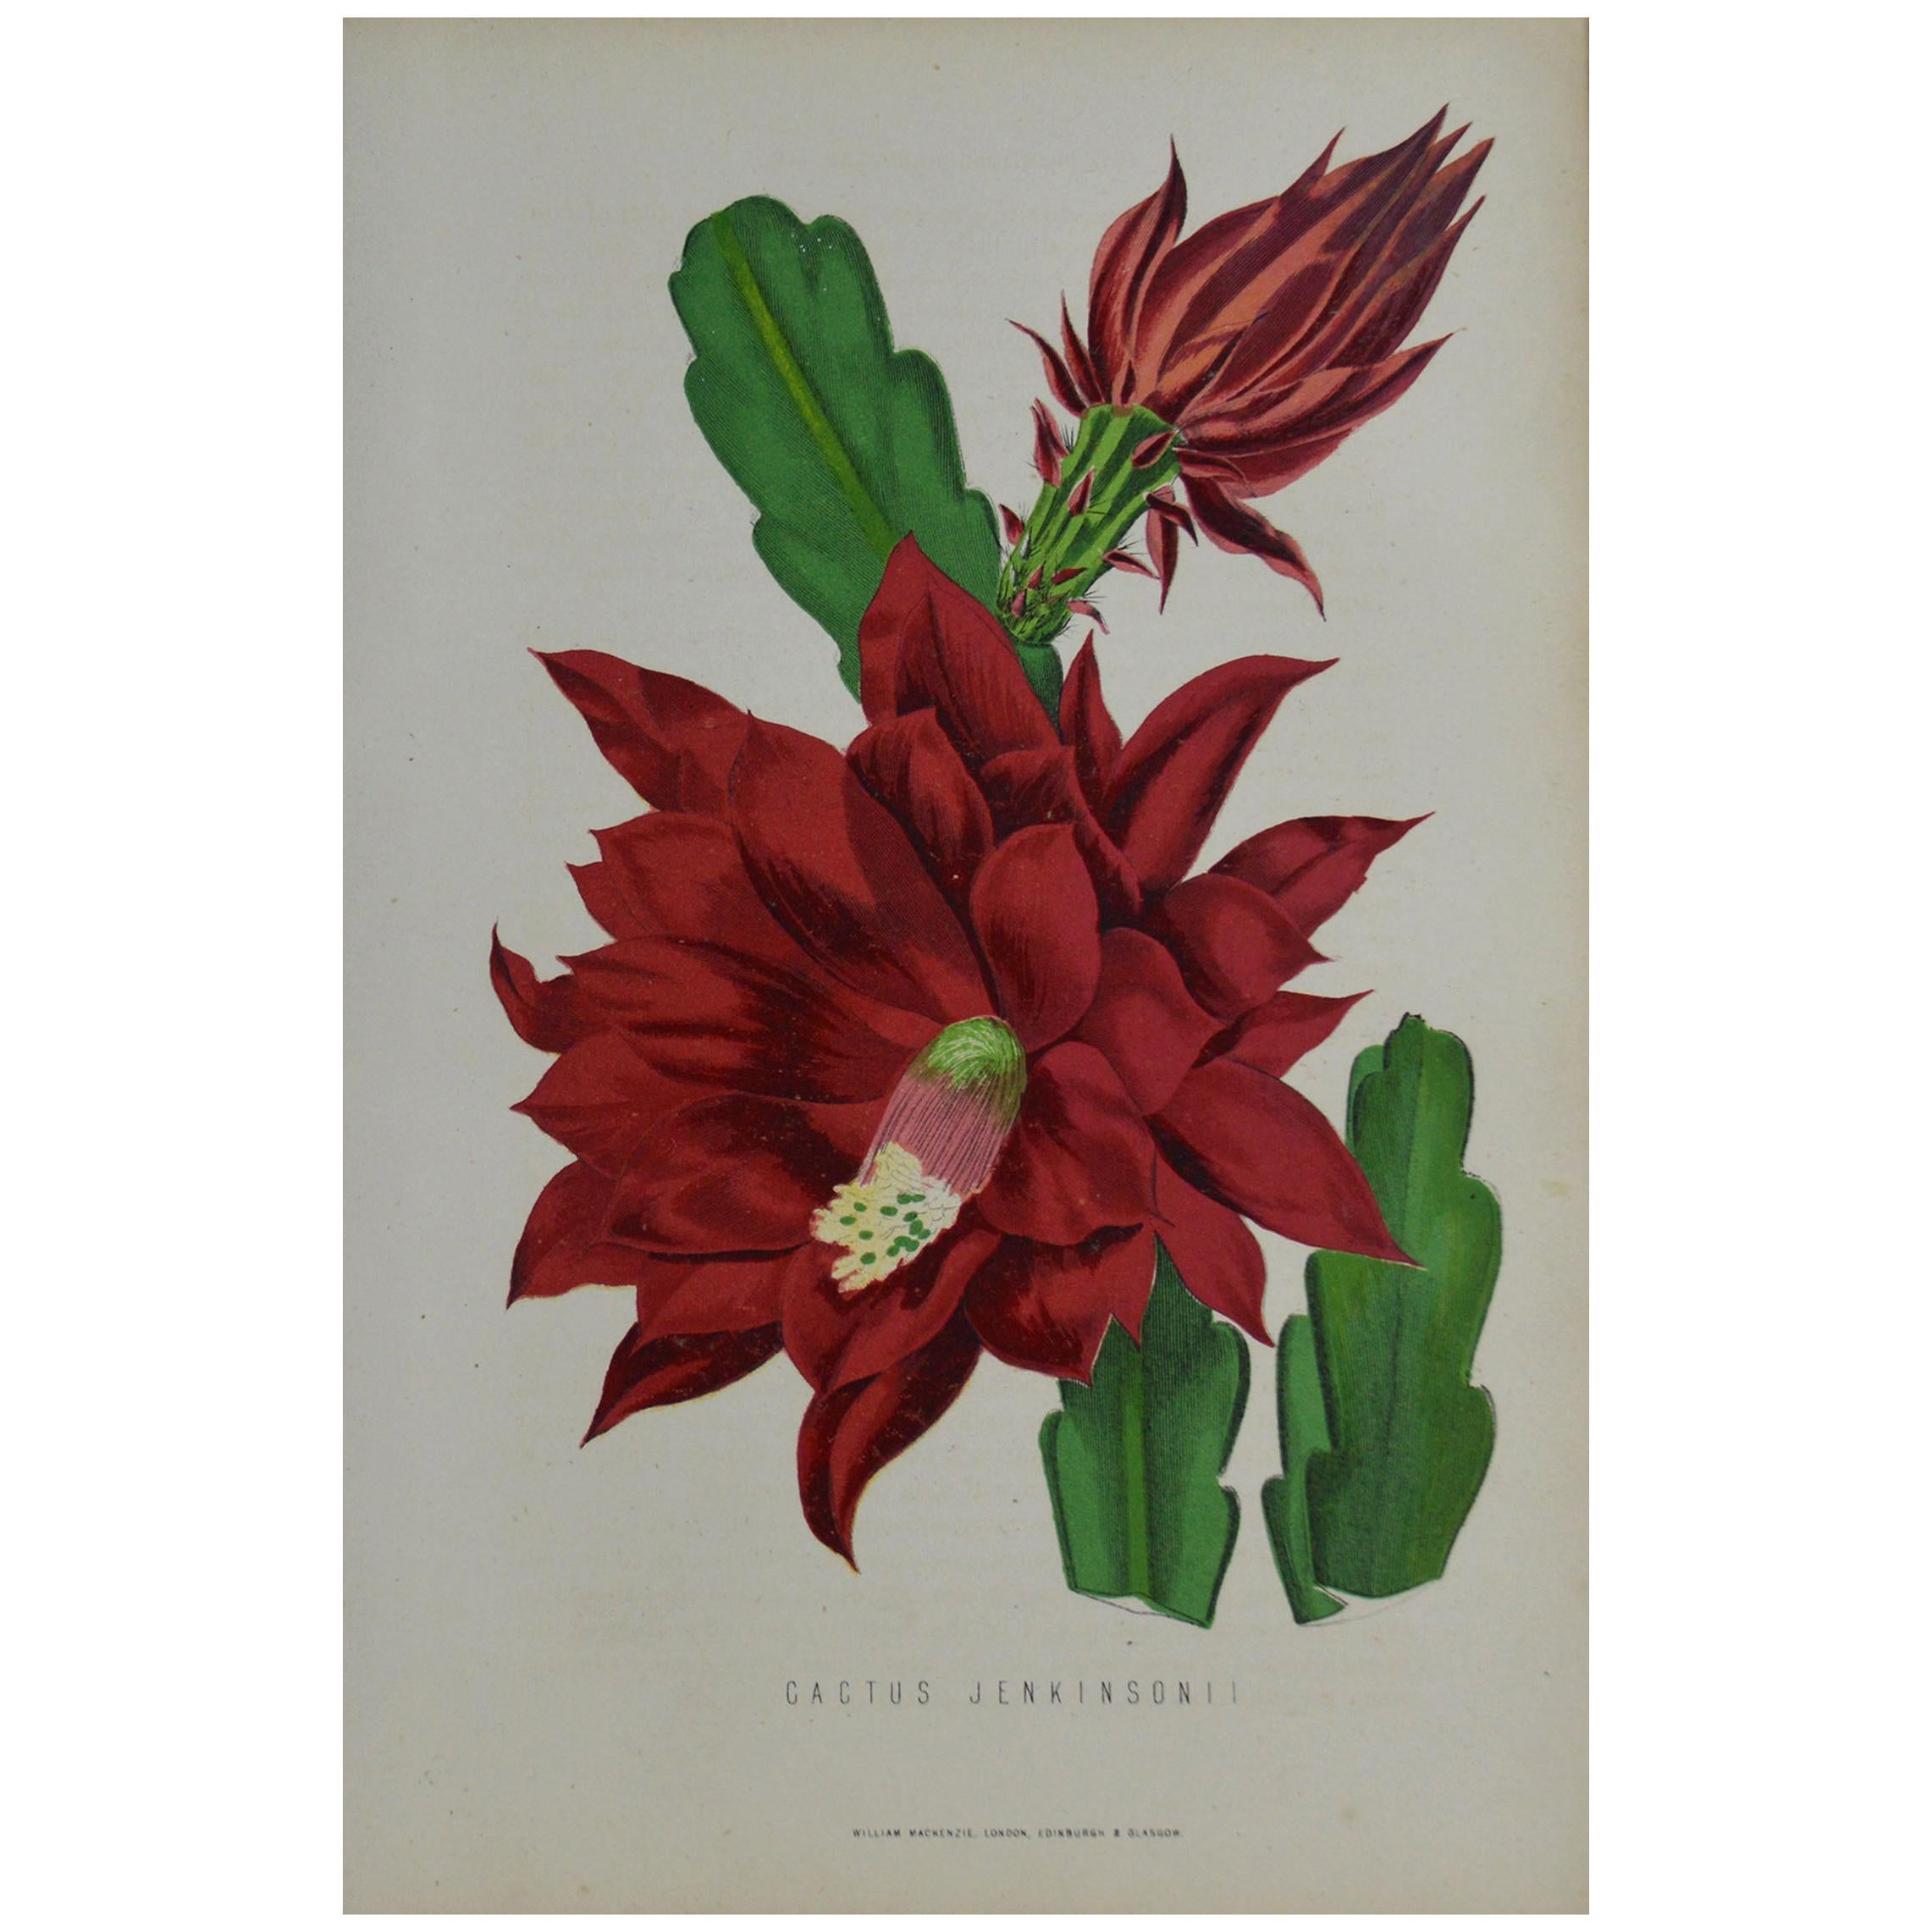 Original Antique Botanical Print - Cactus Jenkinsonii. Unframed, circa 1850